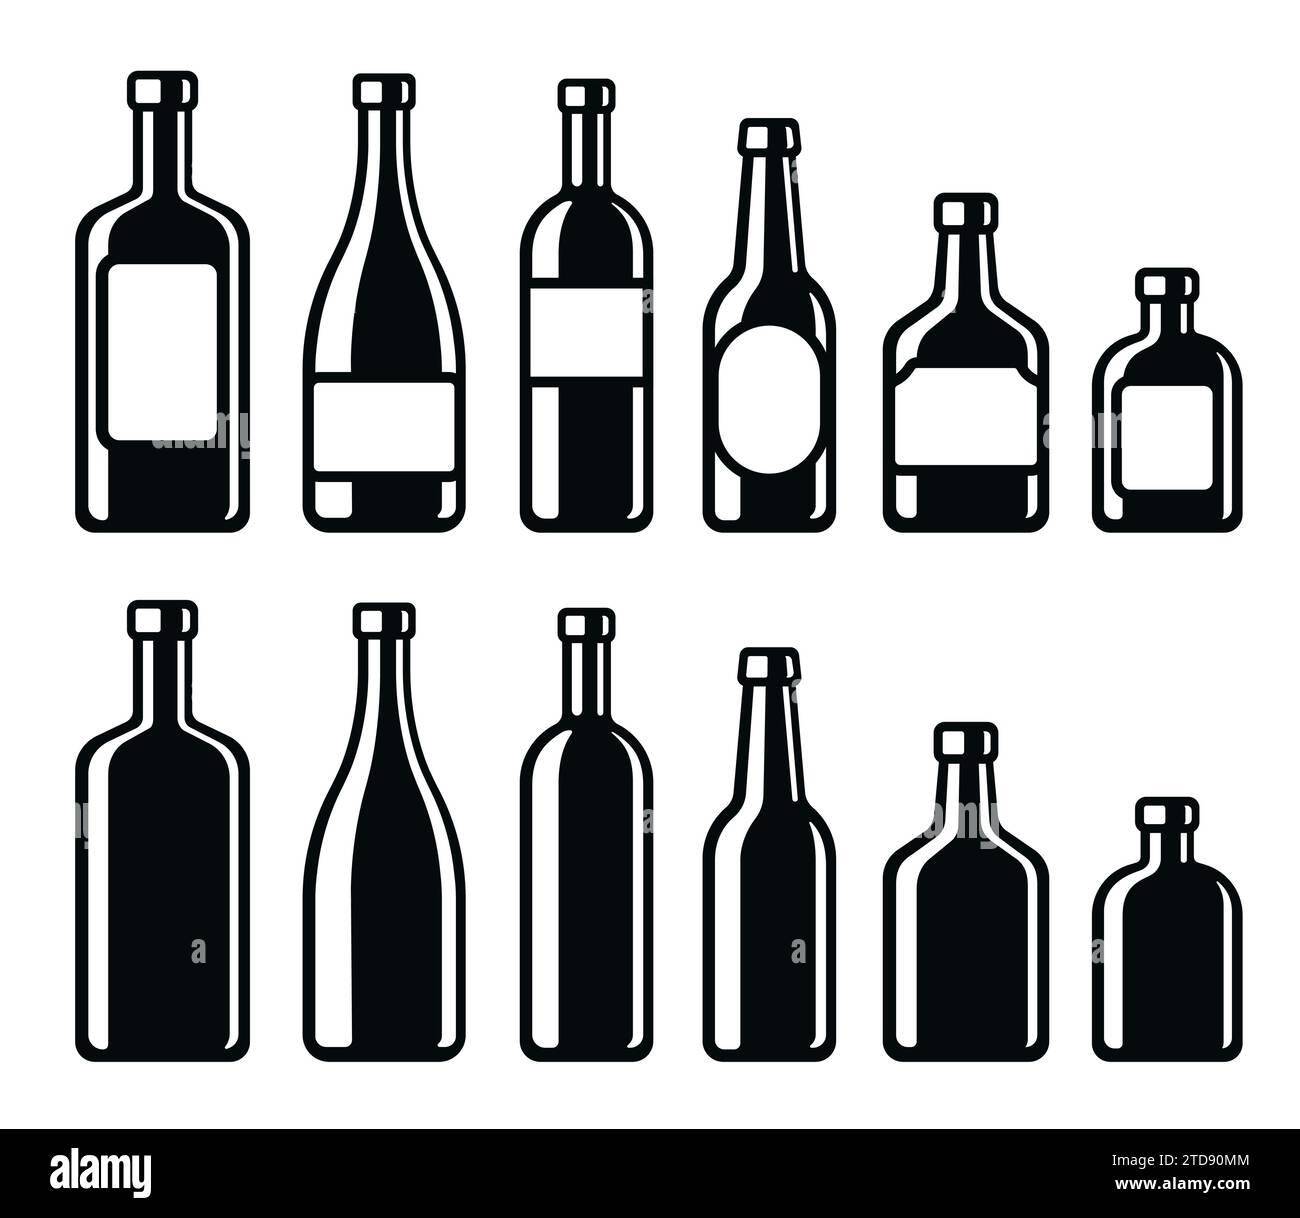 Symbole für alkoholische Getränke. Wein, Champagner, Bier, Whiskey, harter Likör. Einfache und stilvolle Schwarzweiß-Vektor-Illustration. Stock Vektor